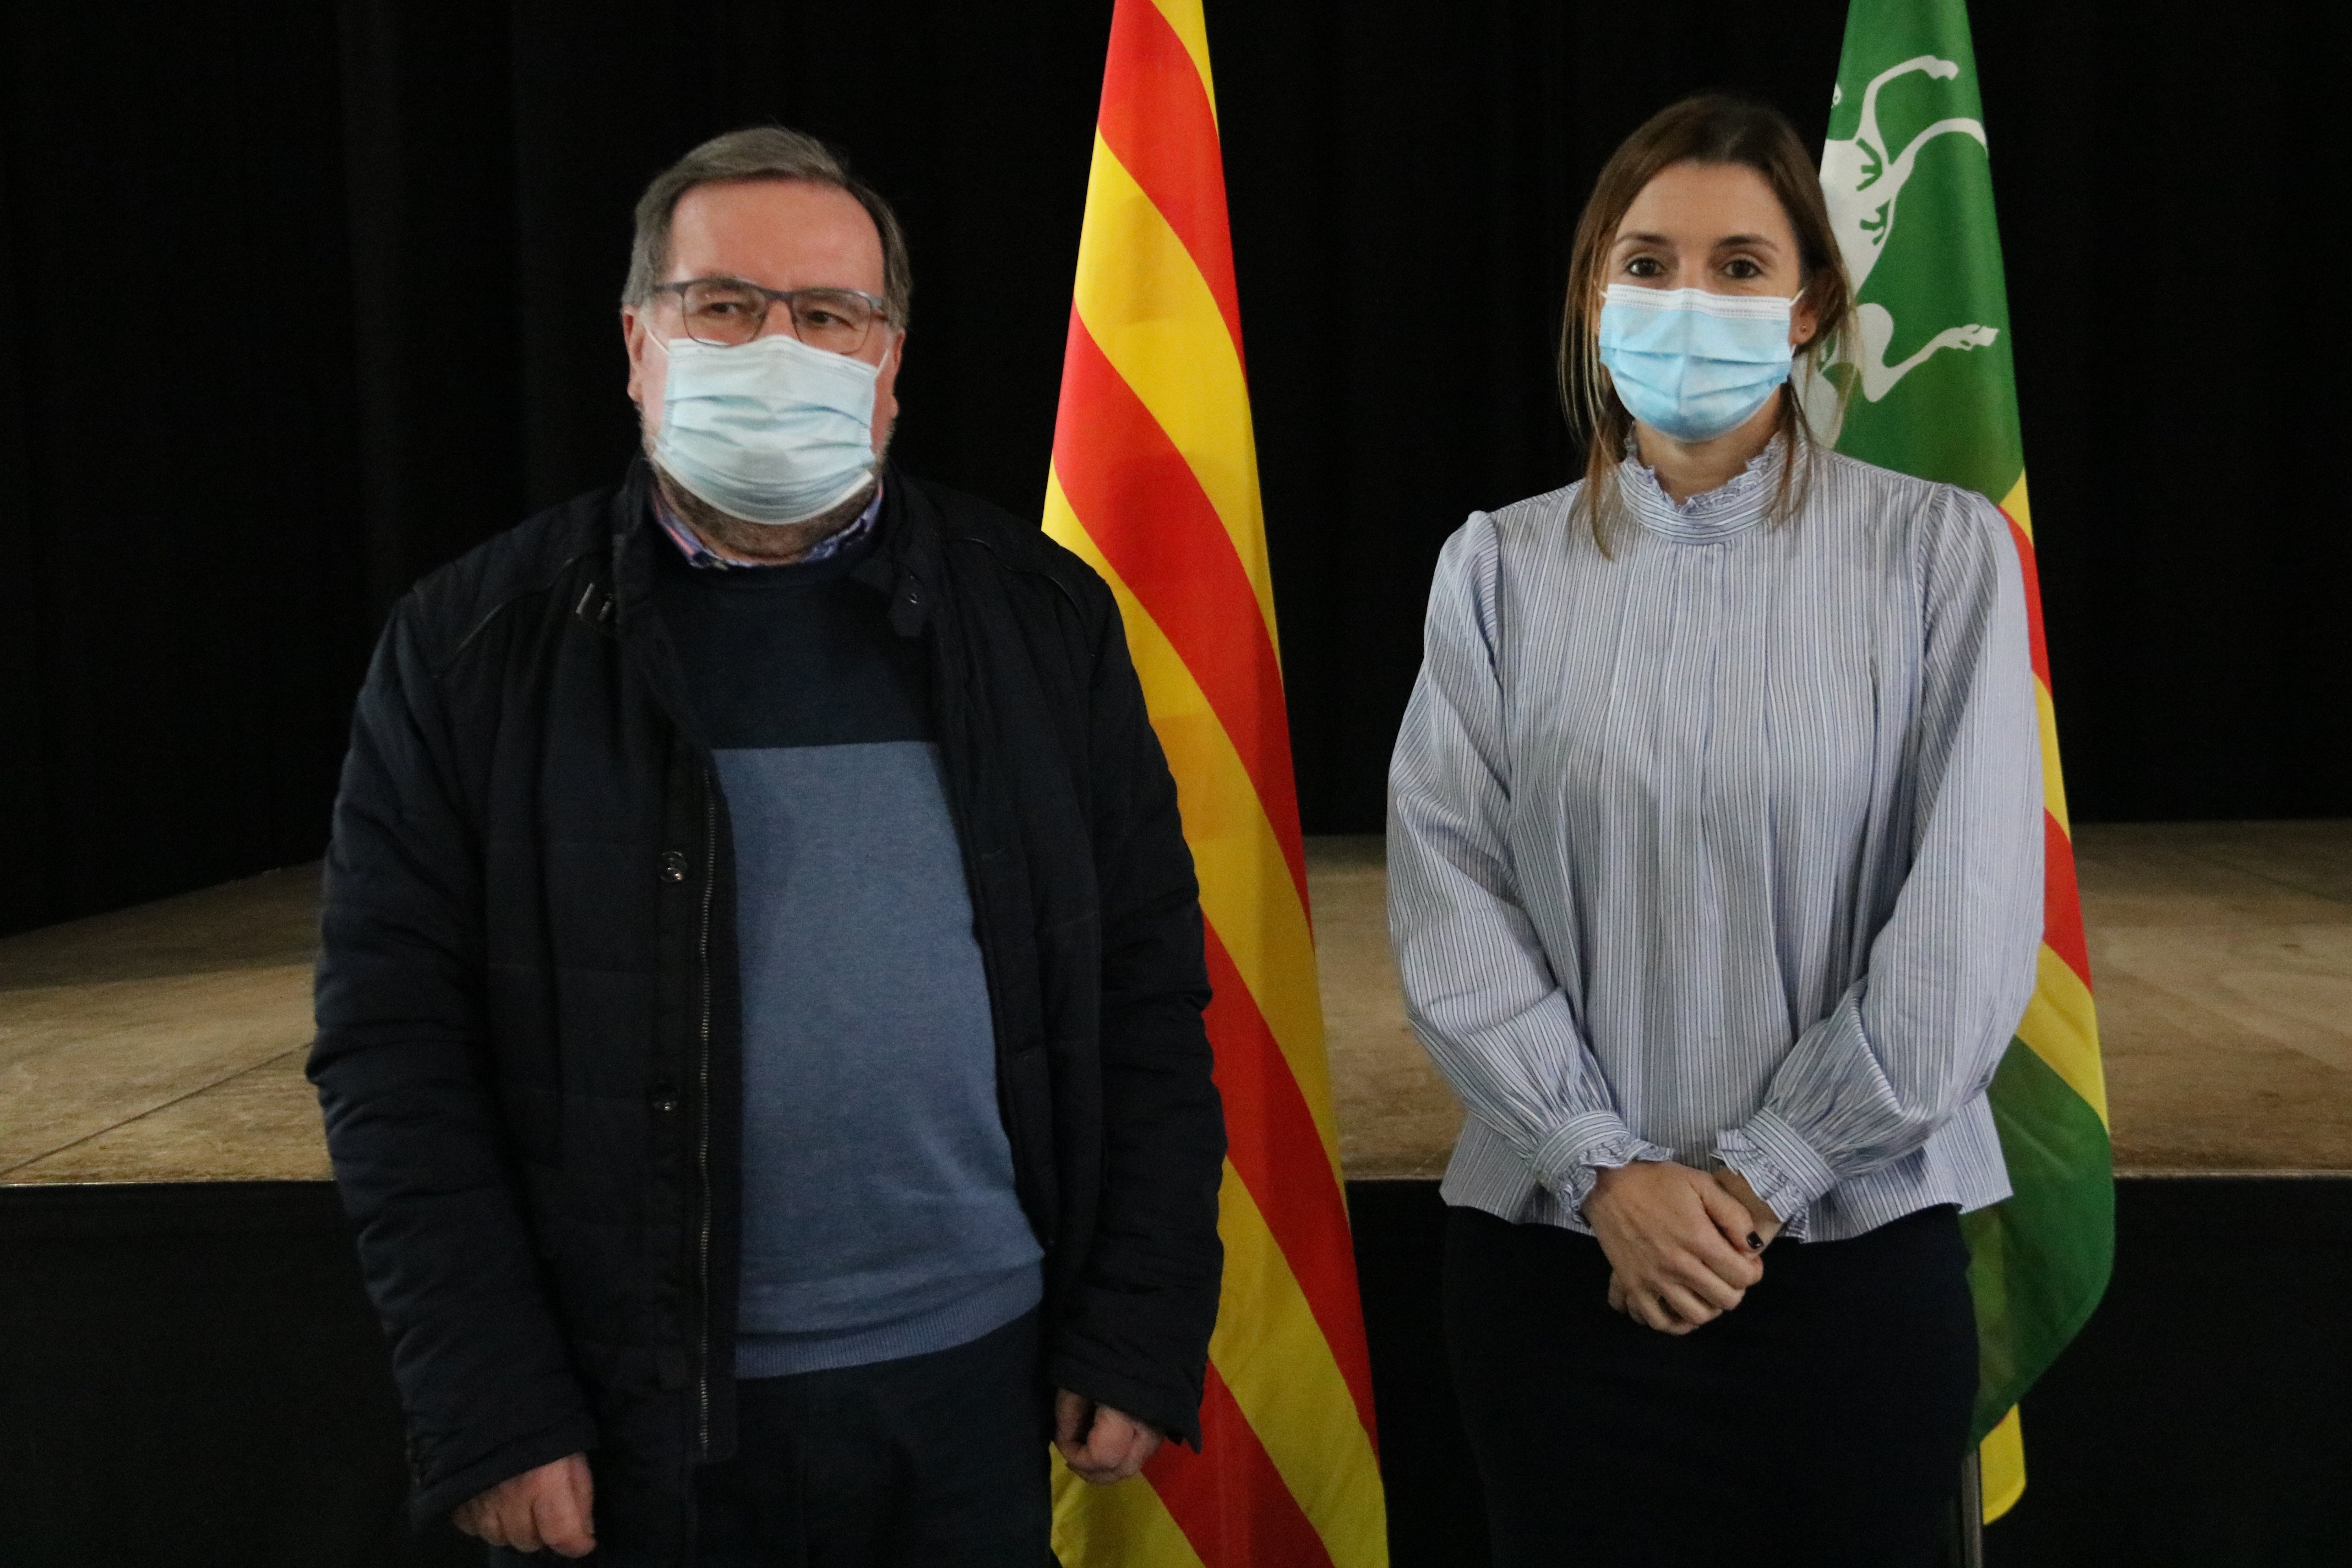 El PSC arrabassa l'alcaldia de Parets del Vallès a ERC amb l'ajuda dels comuns